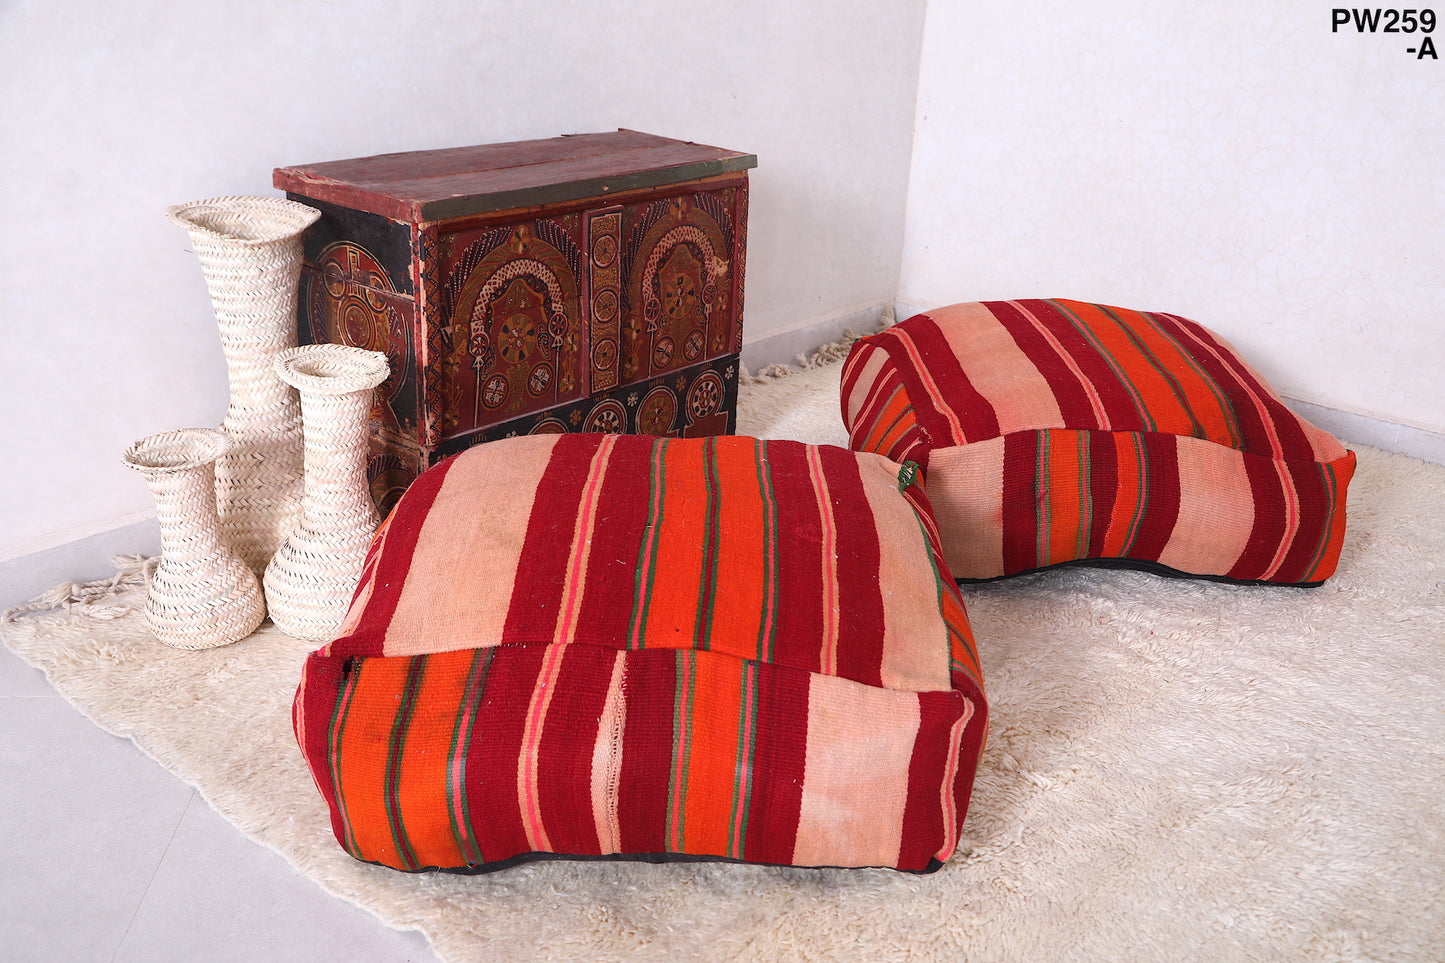 Two Ottoman Moroccan Pillows for Home Decor